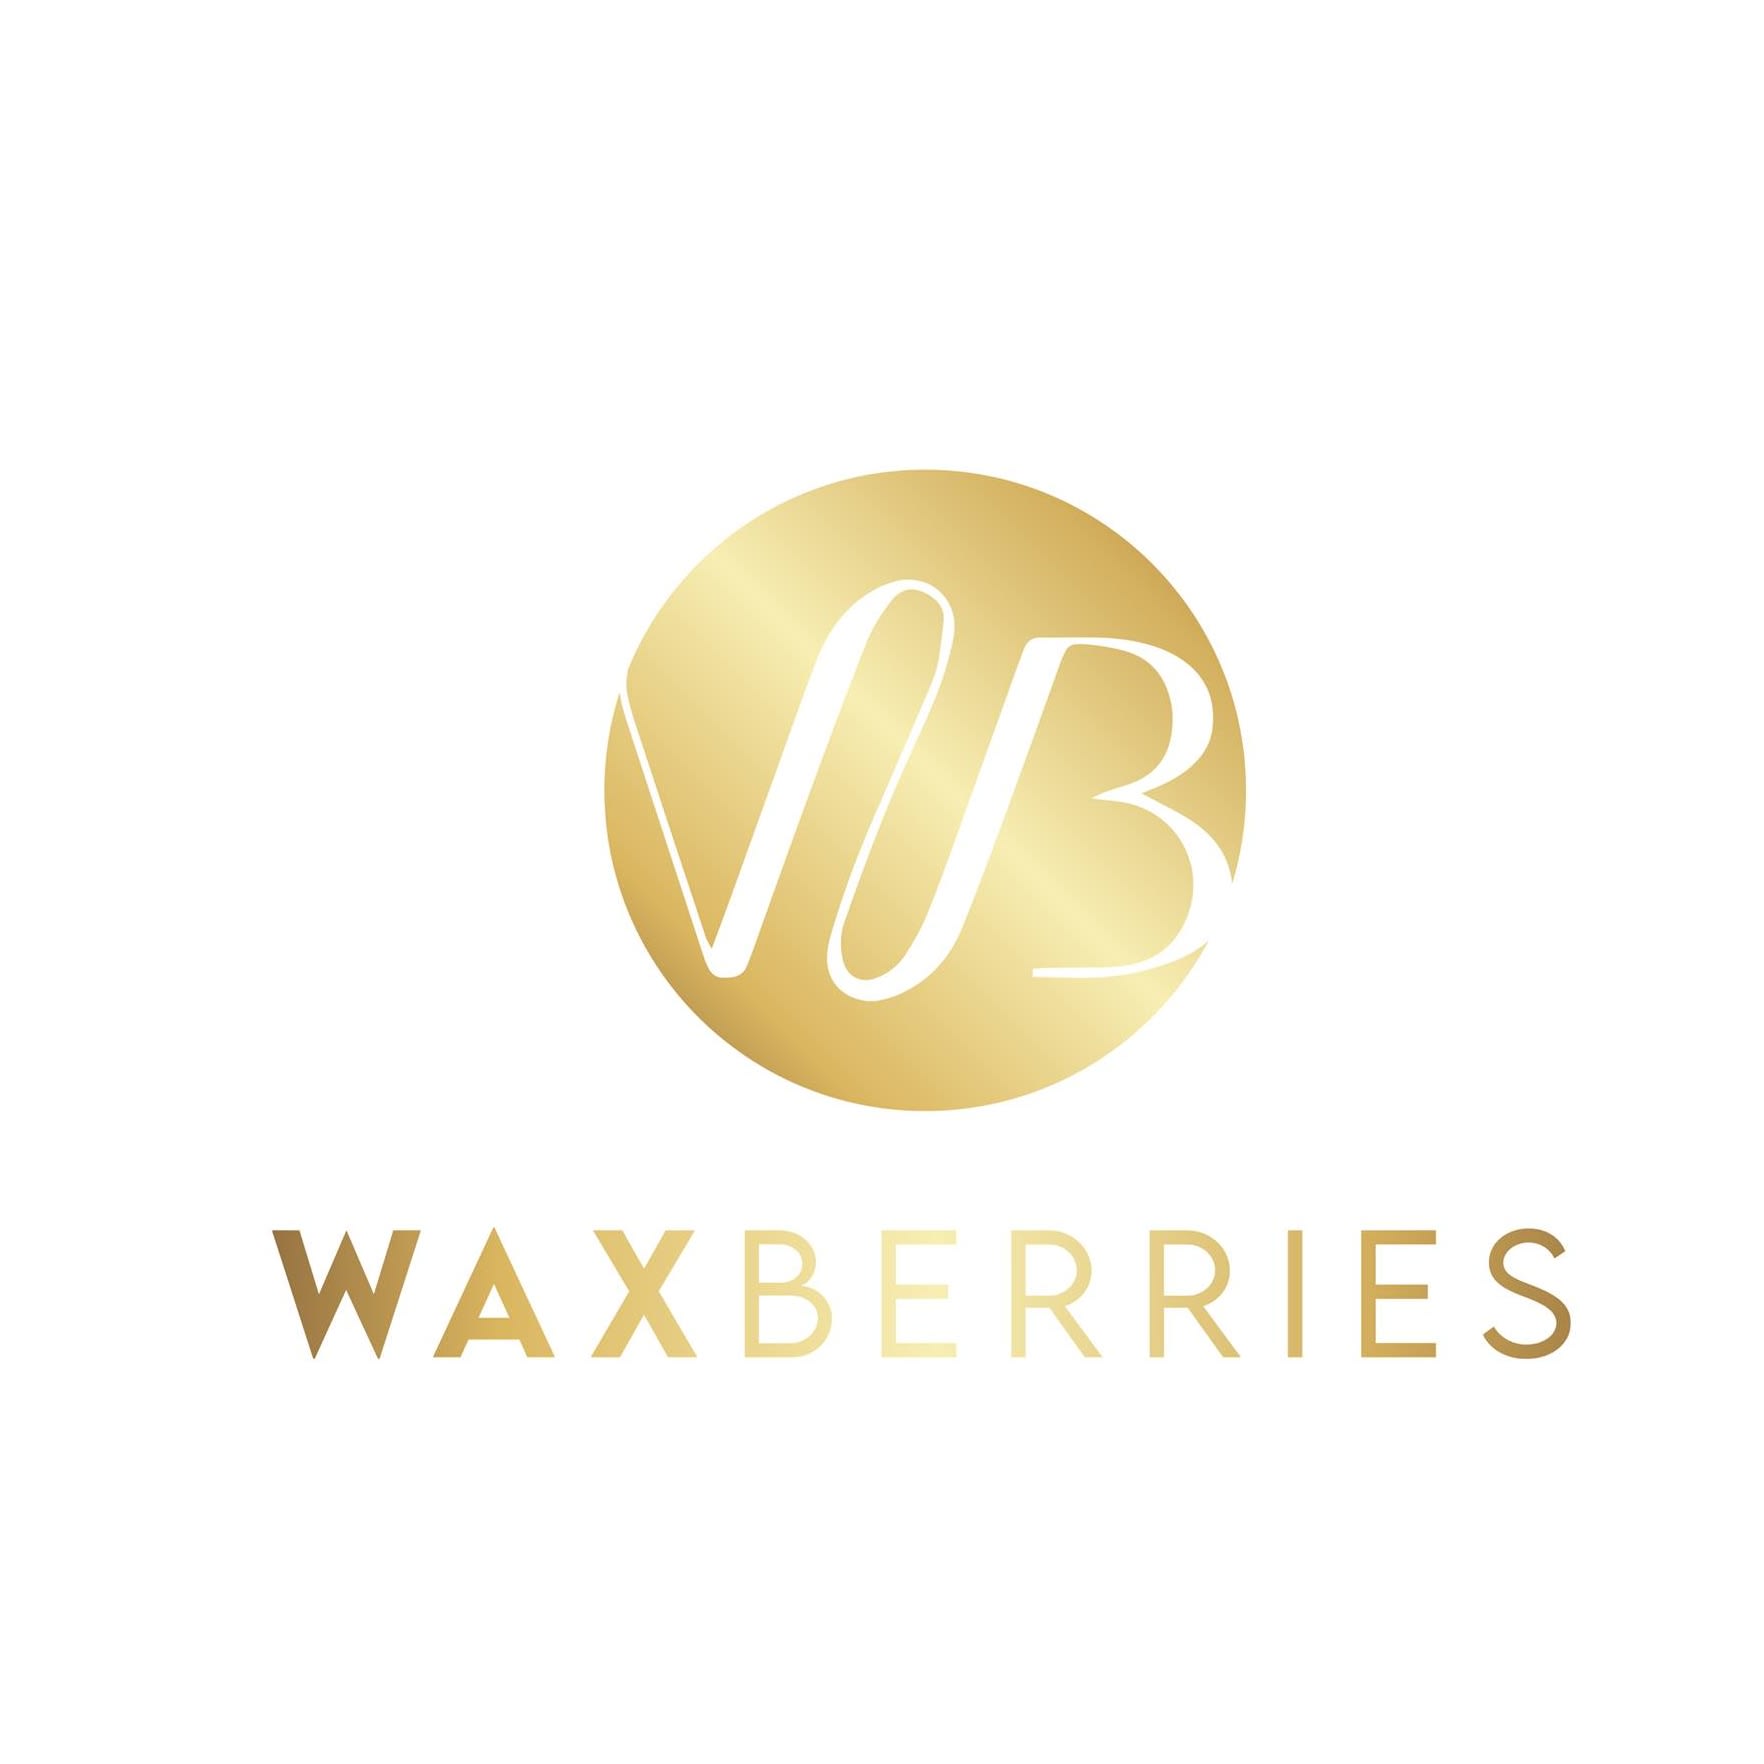 Waxberries